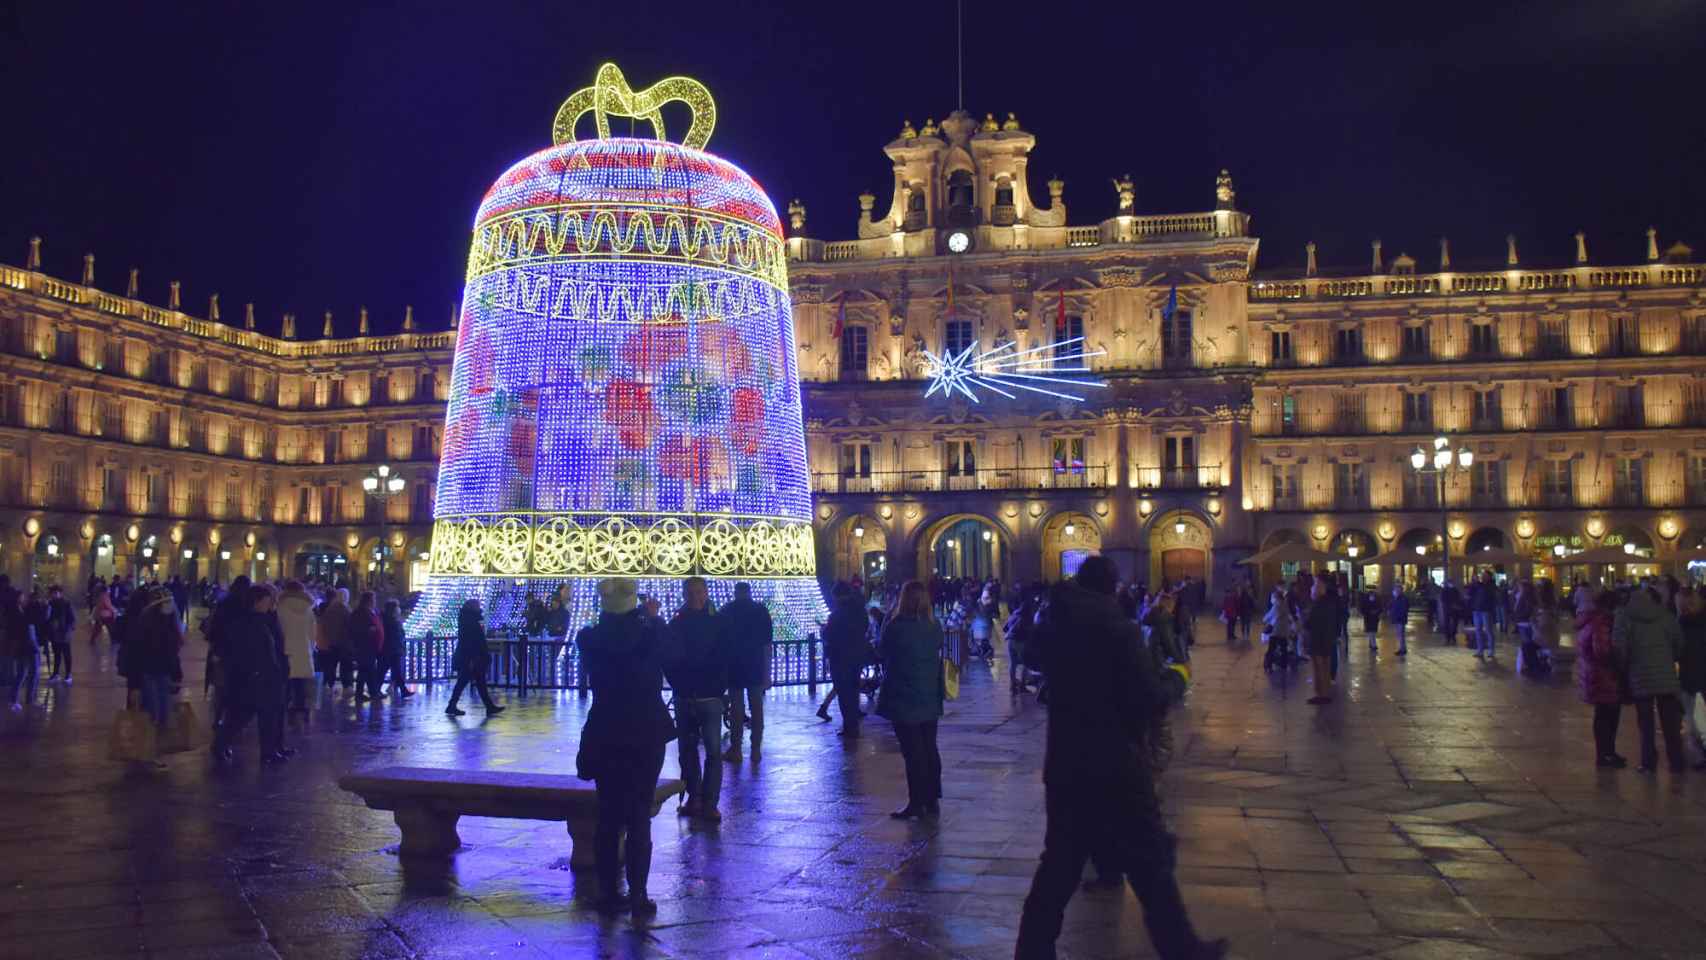 Imágenes de la iluminación de Navidad de Salamanca 2021